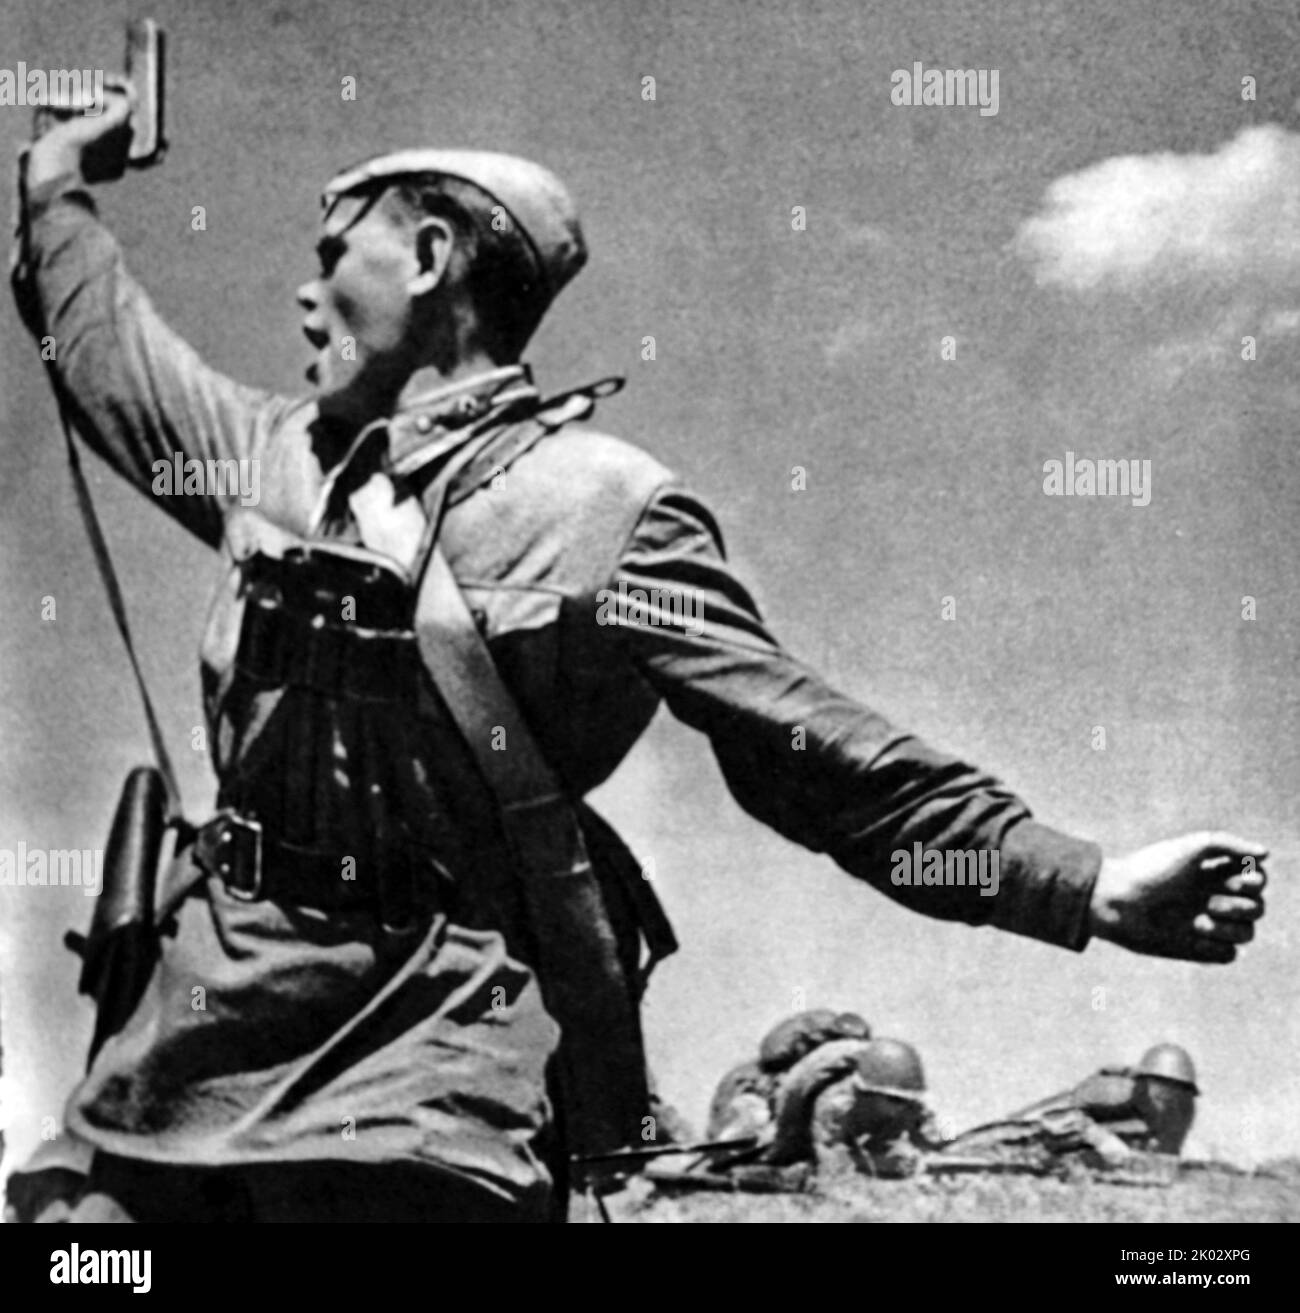 Kombat ist eine Schwarz-Weiß-Fotografie des sowjetischen Fotografen Max Alpert. Es zeigt einen sowjetischen Militäroffizier, der mit einer TT-Pistole bewaffnet ist und seine Einheit während des Zweiten Weltkriegs für einen Angriff aufhebt Dieses Werk gilt als eines der ikonischsten Fotografien aus dem Zweiten Weltkrieg, doch weder das Datum noch das Motiv sind mit Sicherheit bekannt. Das Foto zeigt den jungen Politruk Aleksei Jeryomenko, wenige Minuten vor seinem Tod am 12. Juli 1942, im Woroschilowgrad-Gebiet, Ukraine. Stockfoto